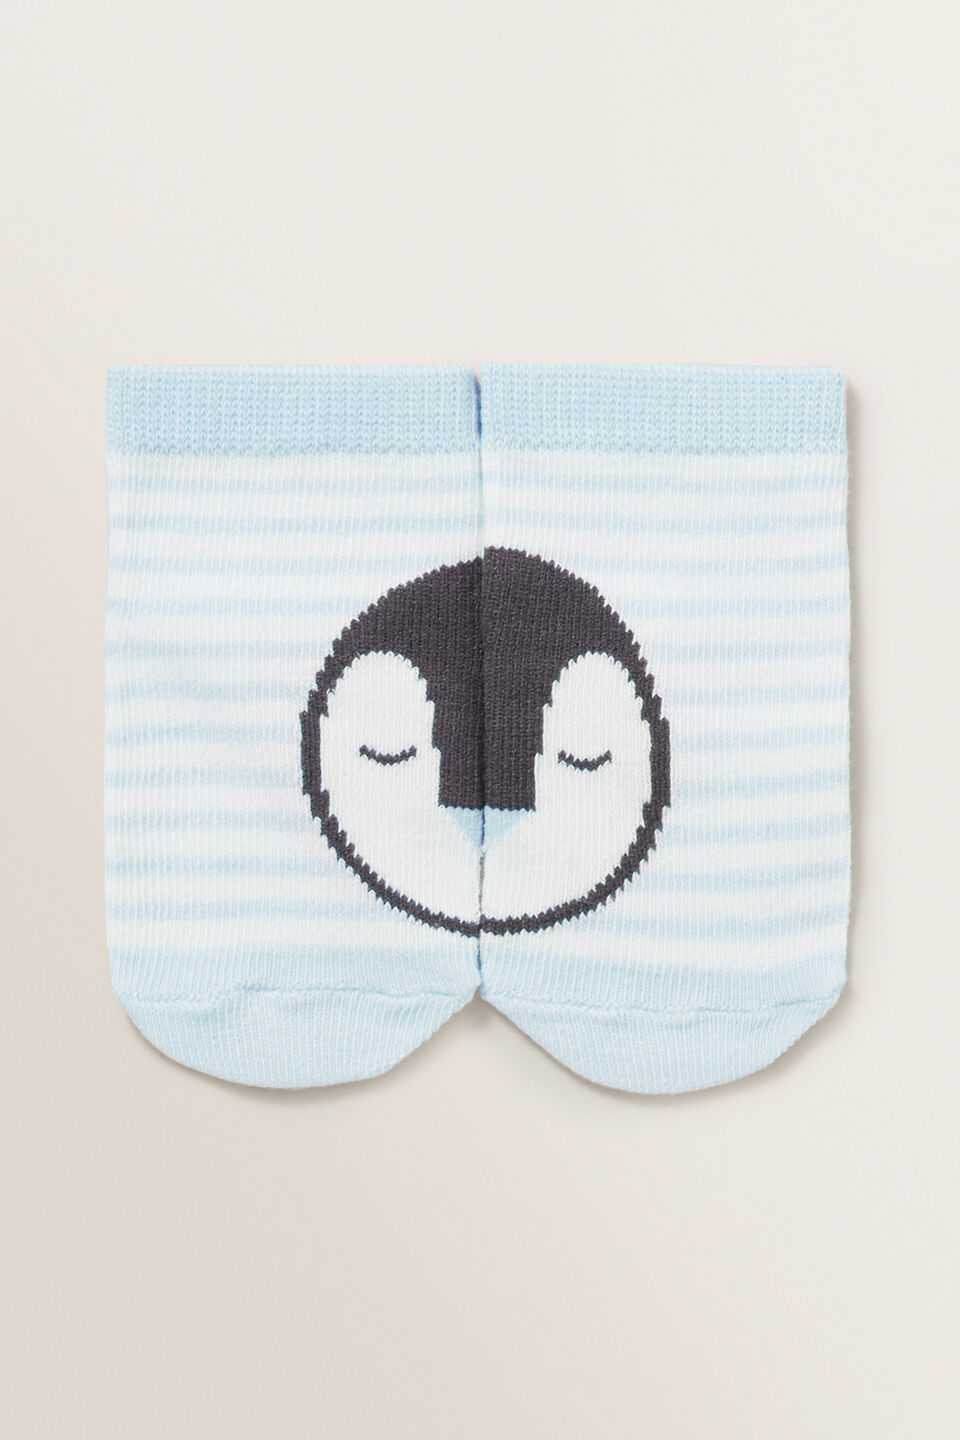 Penguin 3 Pack Socks  